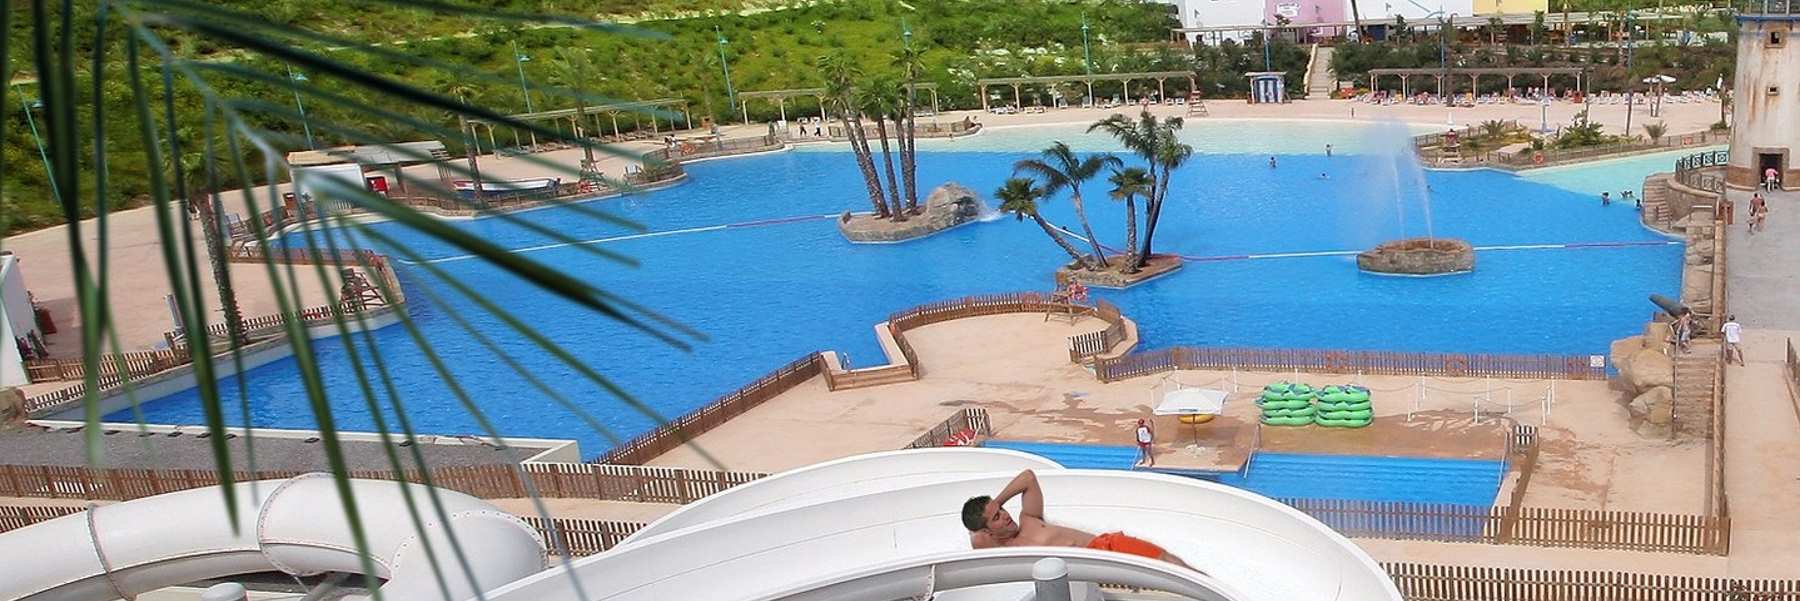 Oferta hotel con toboganes y parque temático en Benidorm para verano 2023